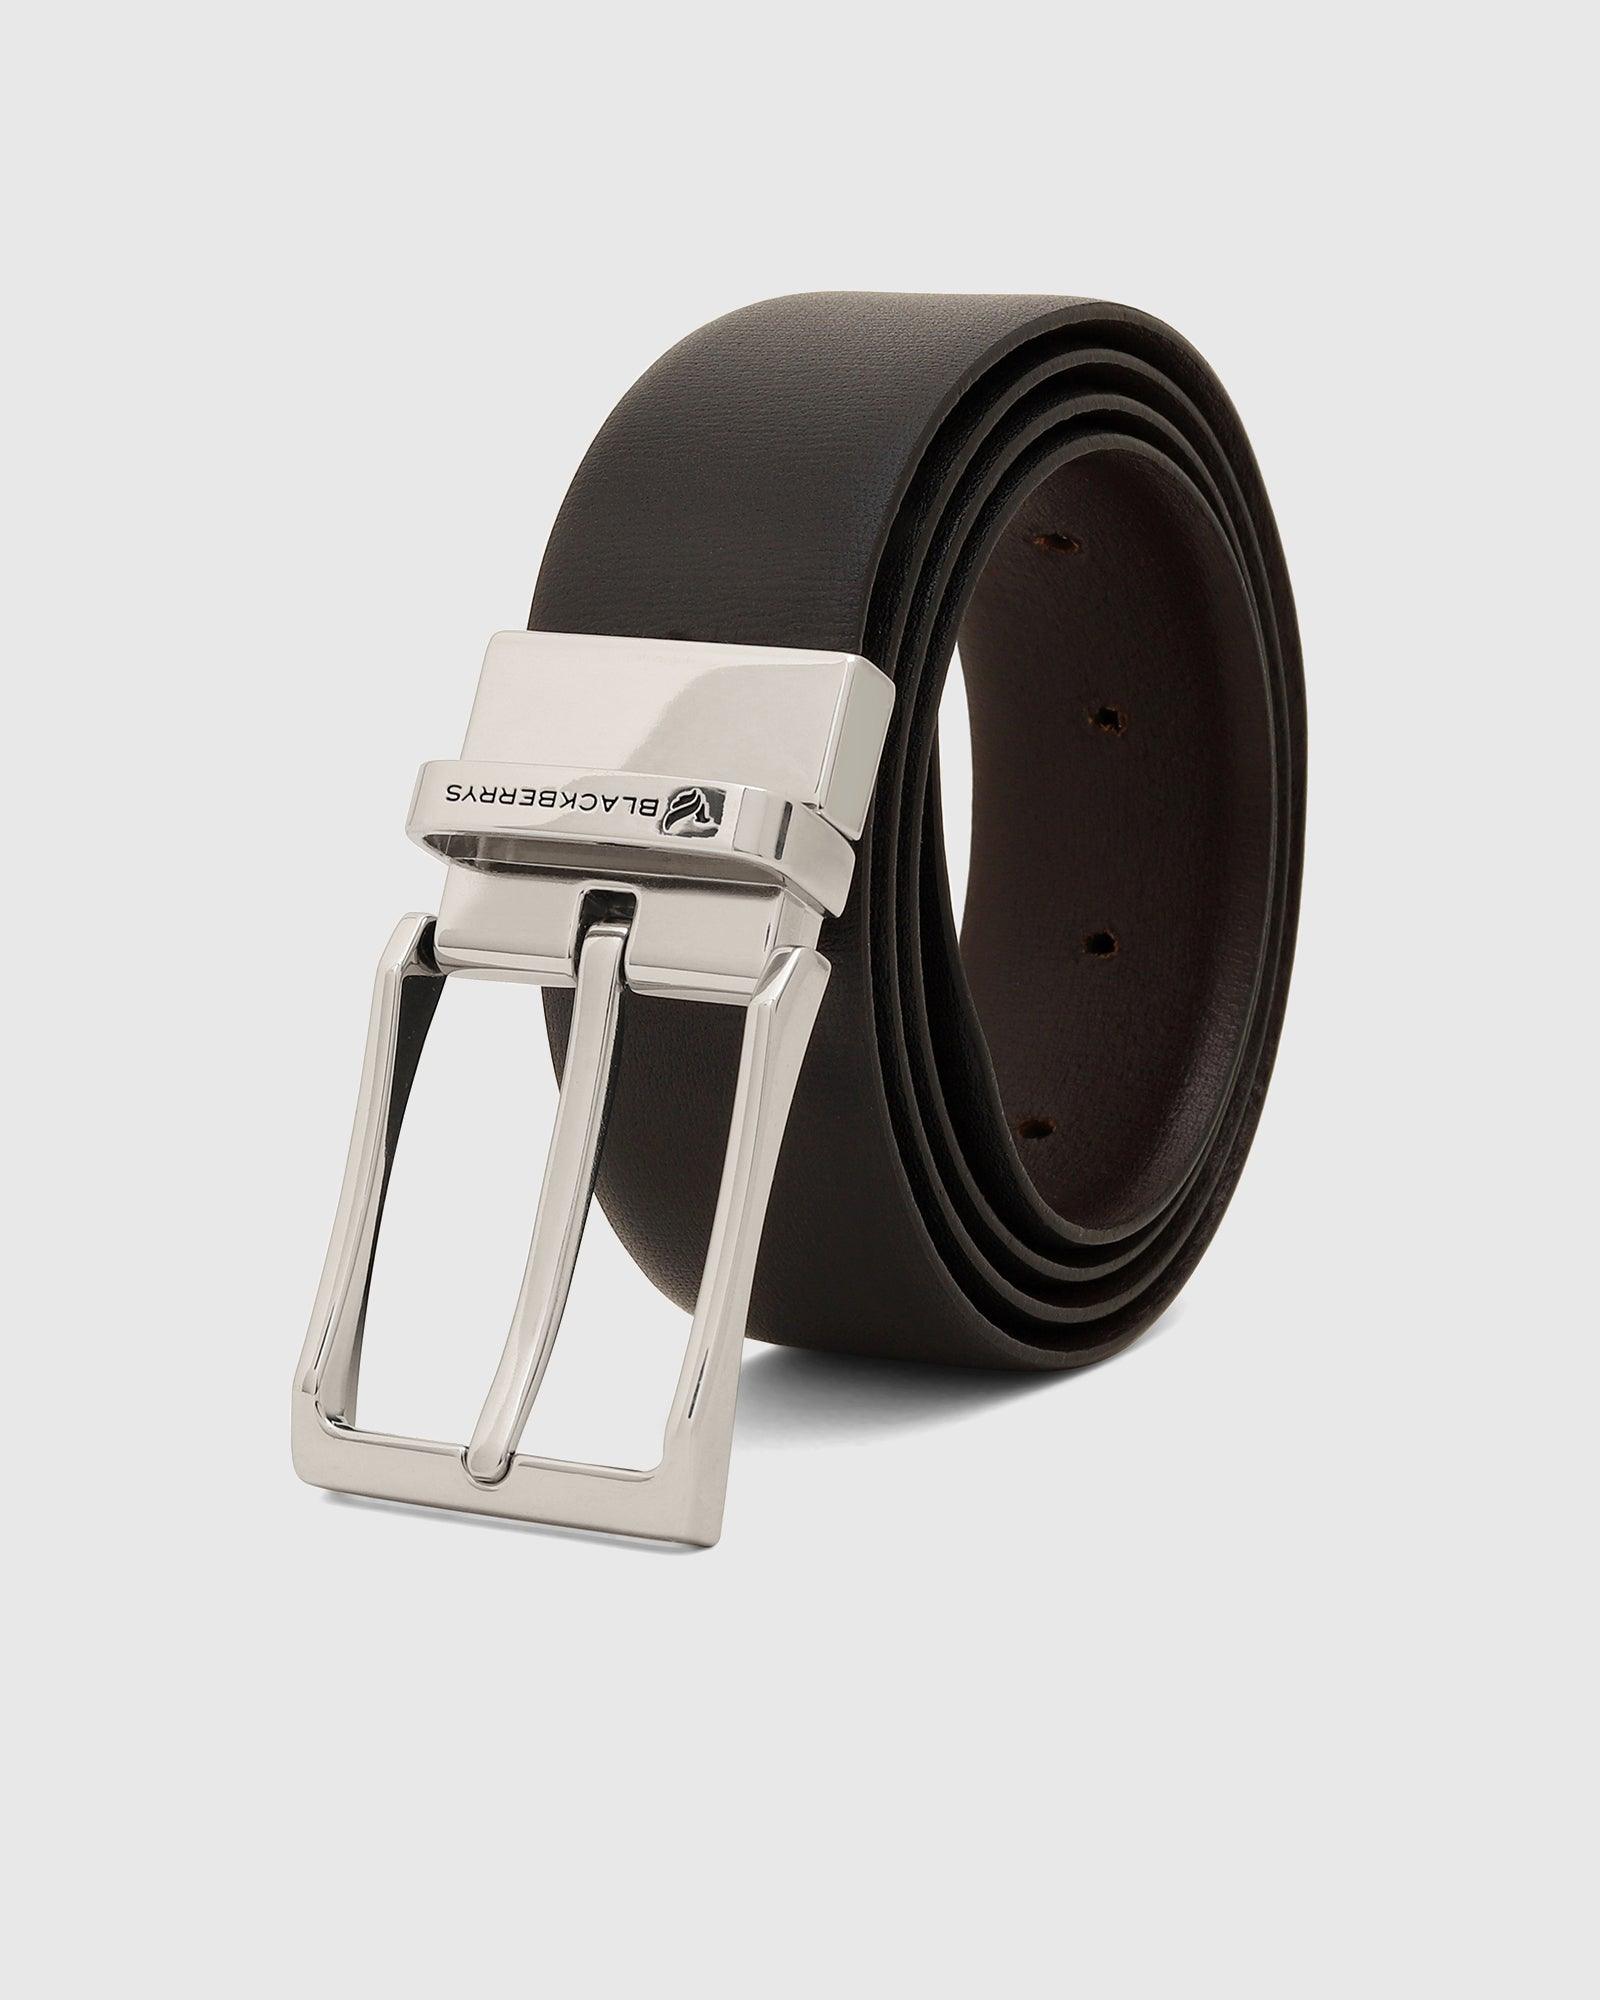 Leather Reversible Black Brown Printed Belt - Plum